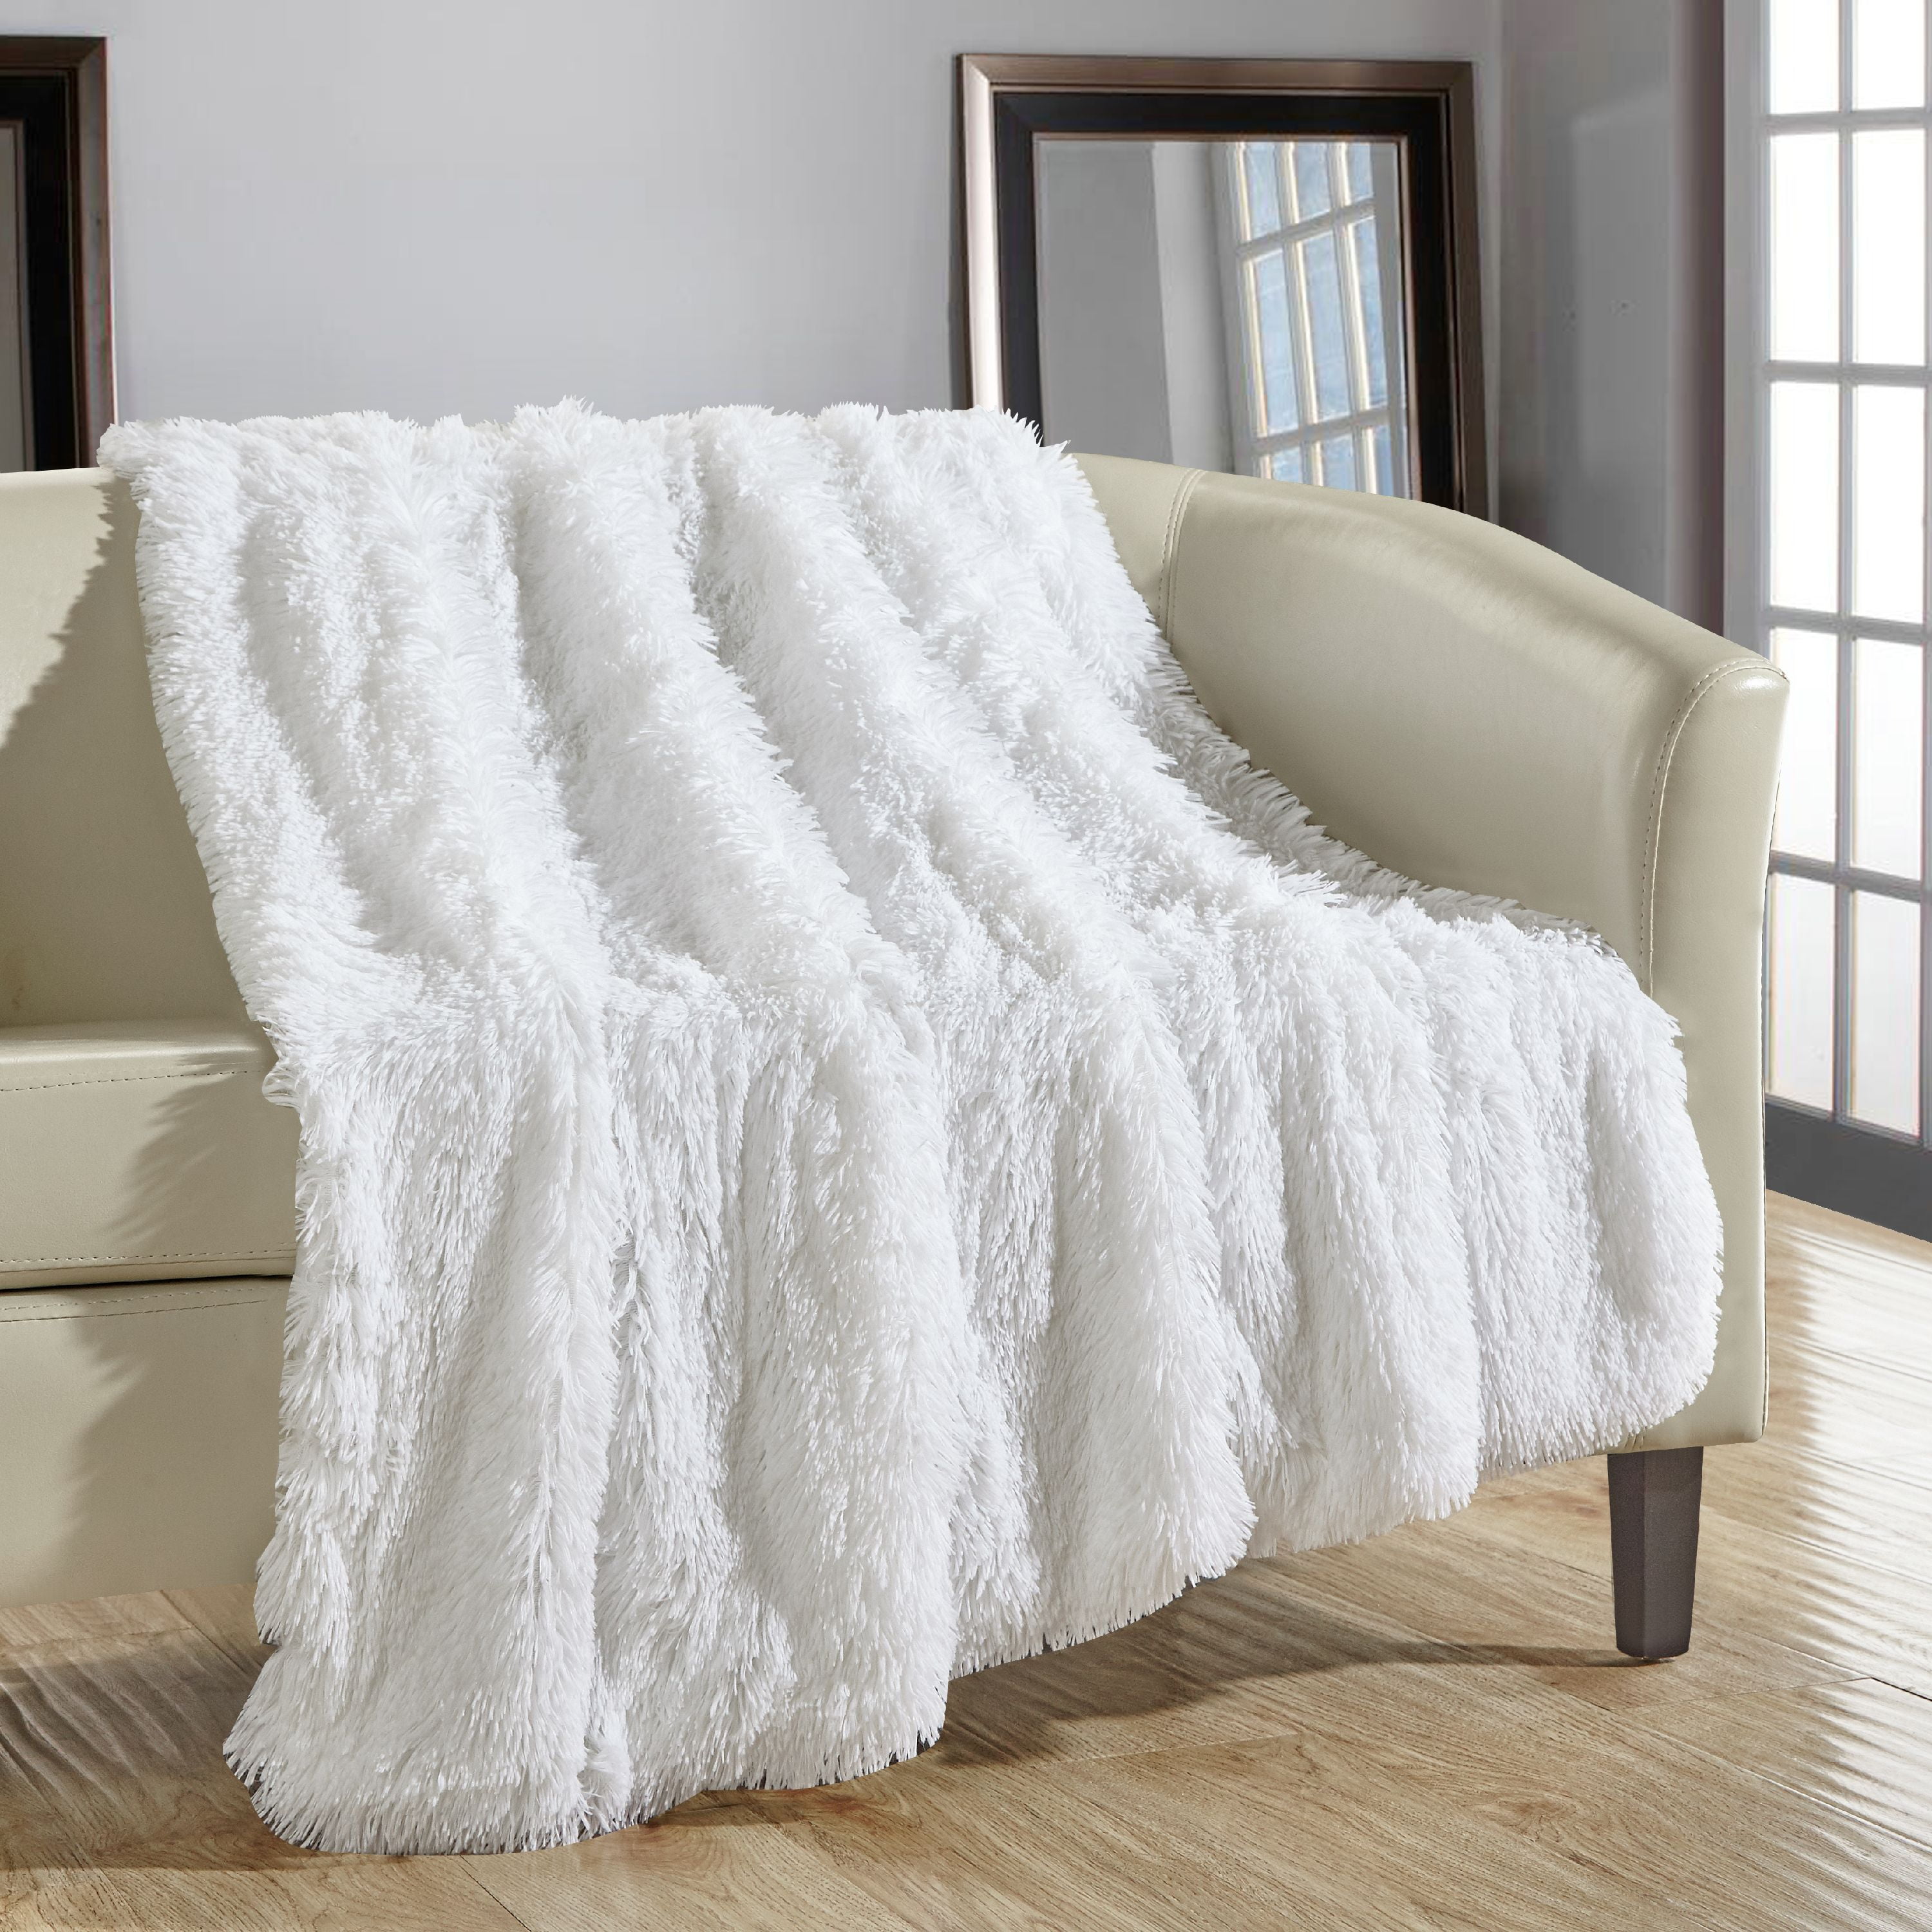 Fluffy Throw Blanket Super Soft Plush Faux Fur 50x60" Grey Elegant Blankets 